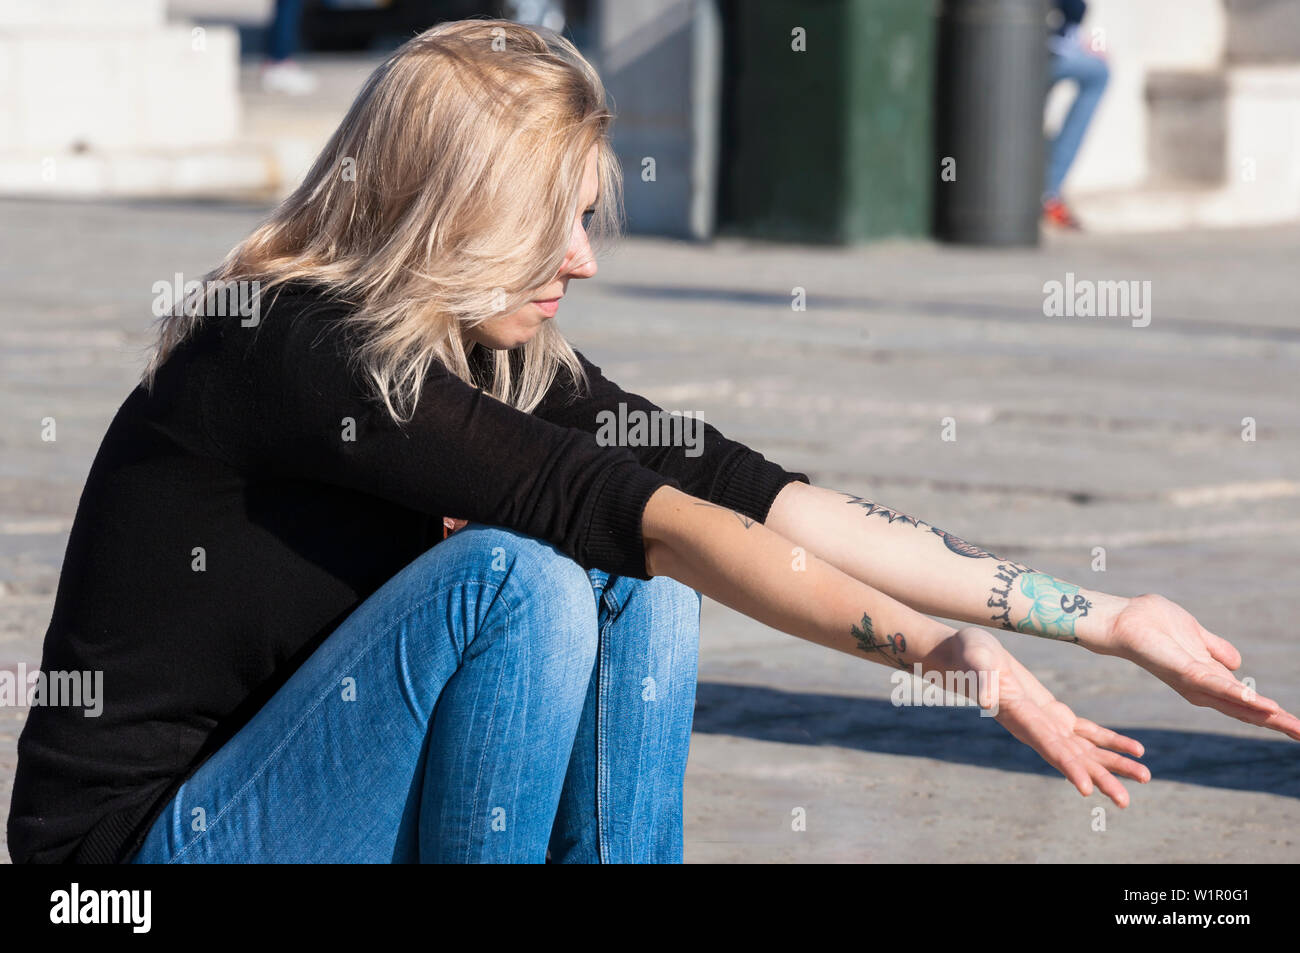 A young woman enjoys the Winter sun at Cais das Colunas, Praça do Comércio, Lisbon, Portugal Stock Photo